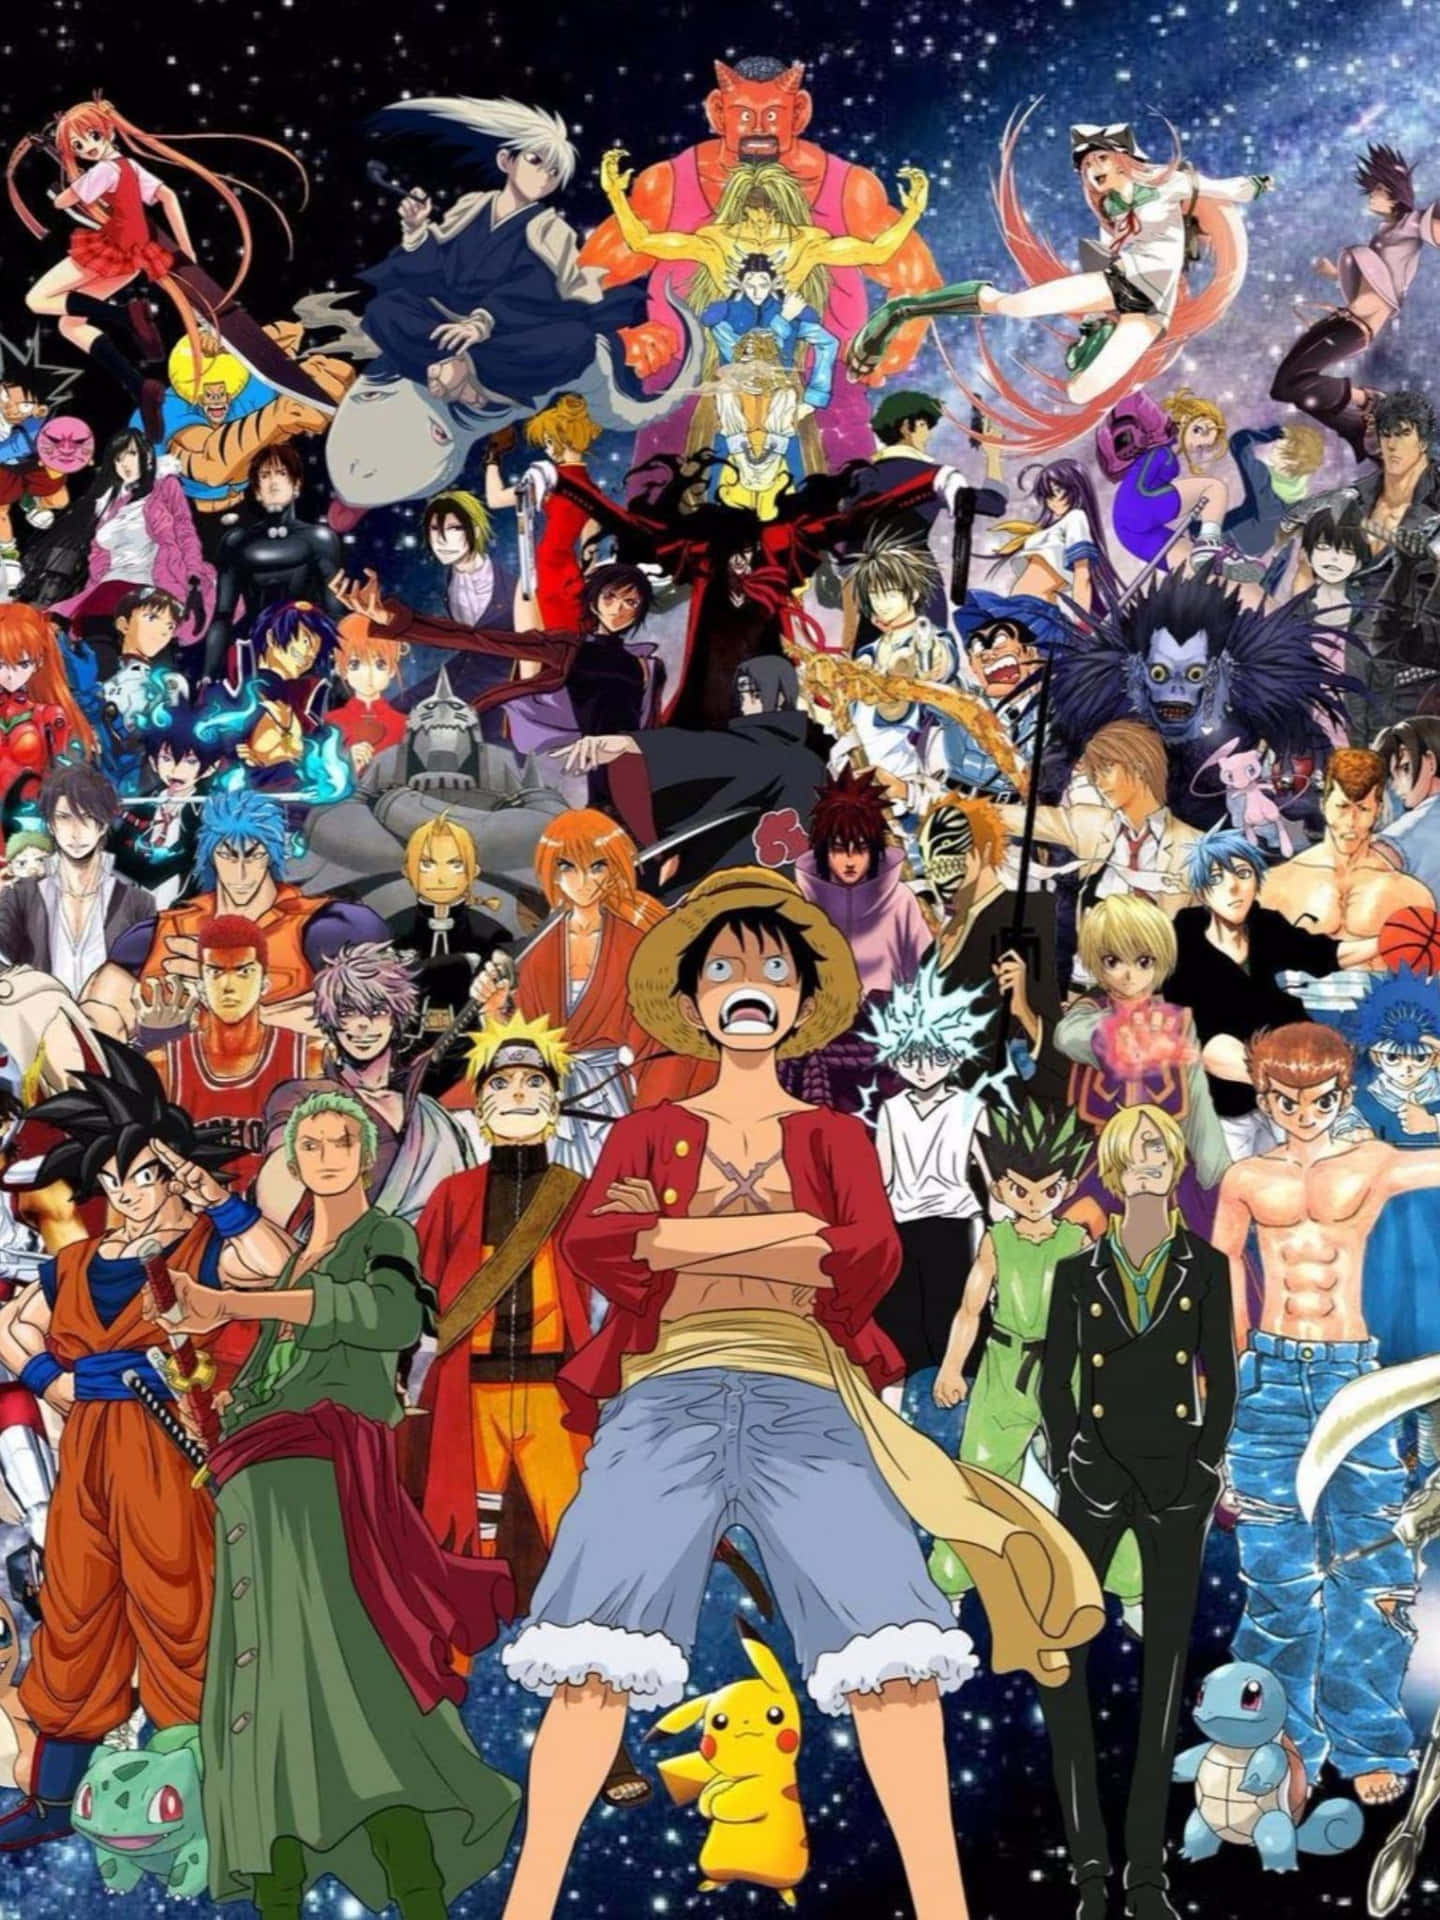 Personagensde Anime Fofinhos Ganham Popularidade.